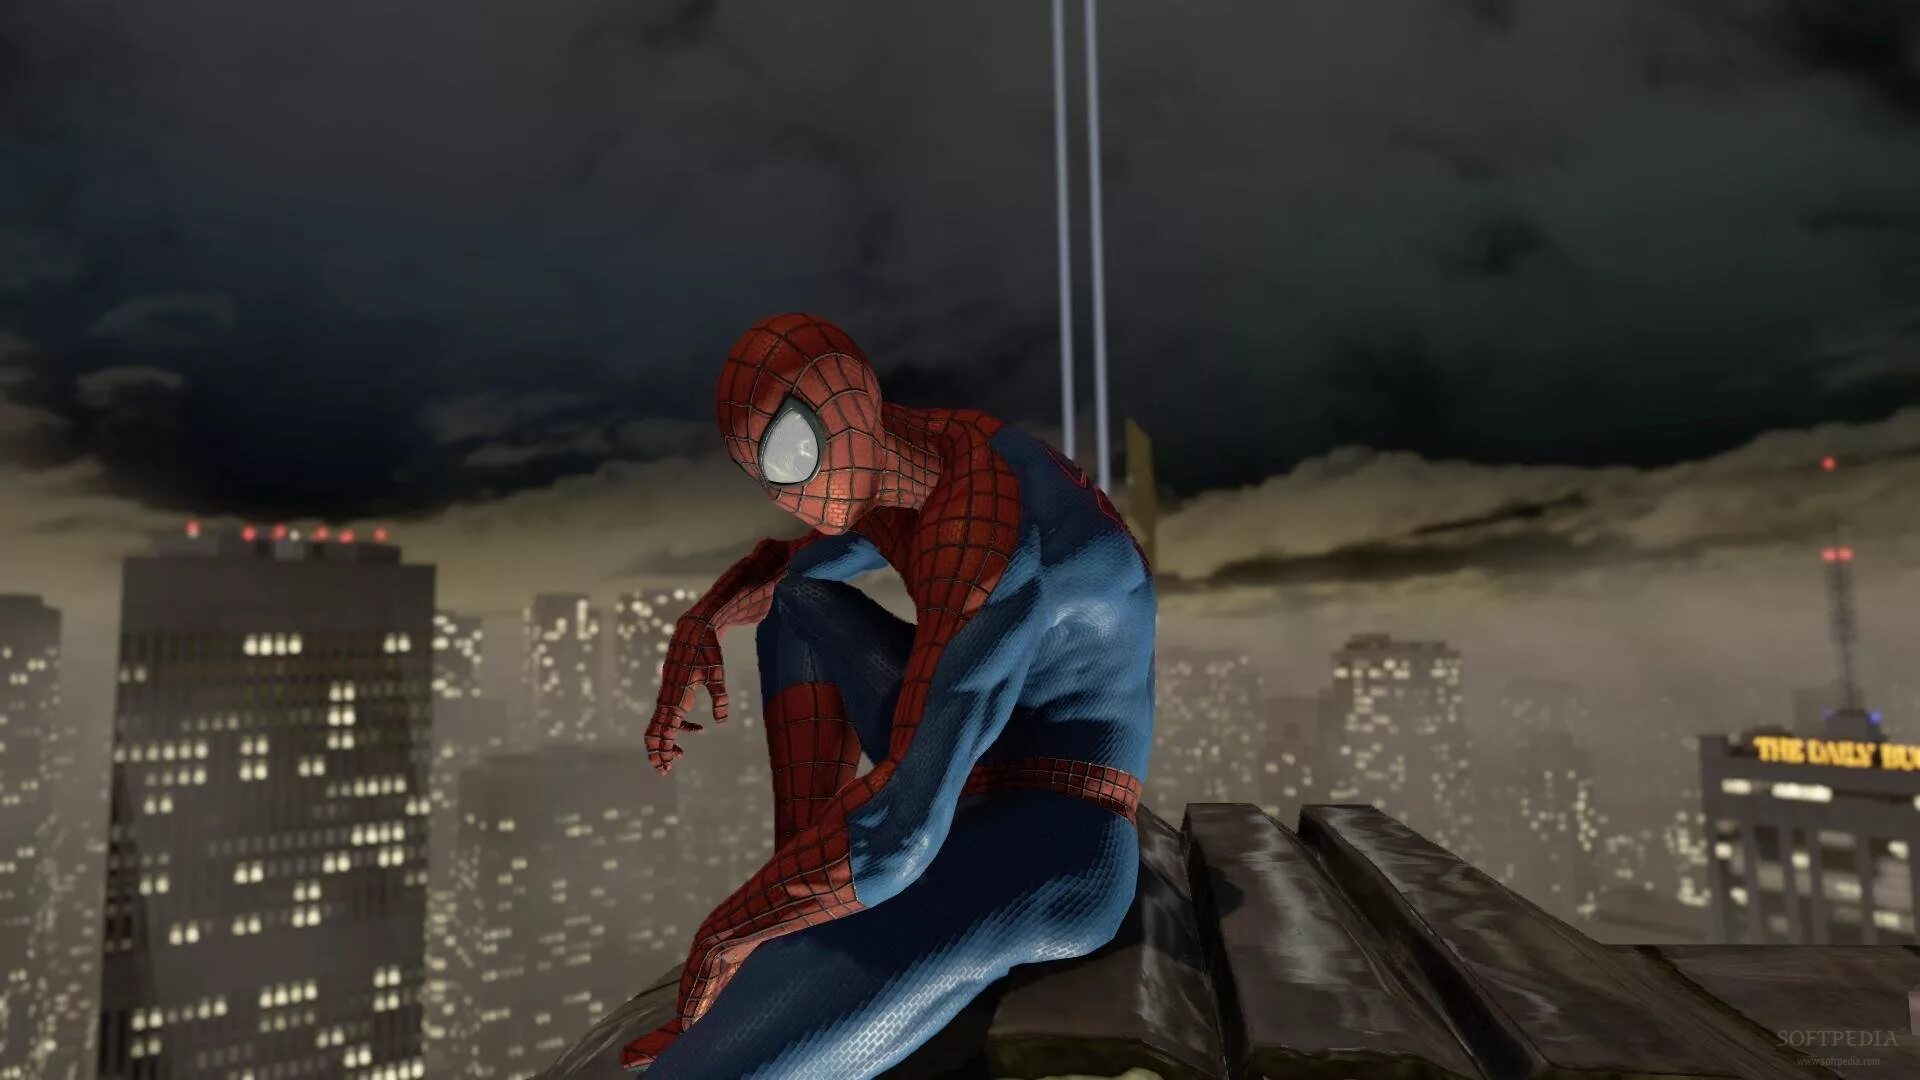 The amazing Spider-man (игра, 2012). The amazing Spider-man 2 (игра, 2014). Человек паук амазинг 2 игра. Spider man 2014 игра. Зе спайдер